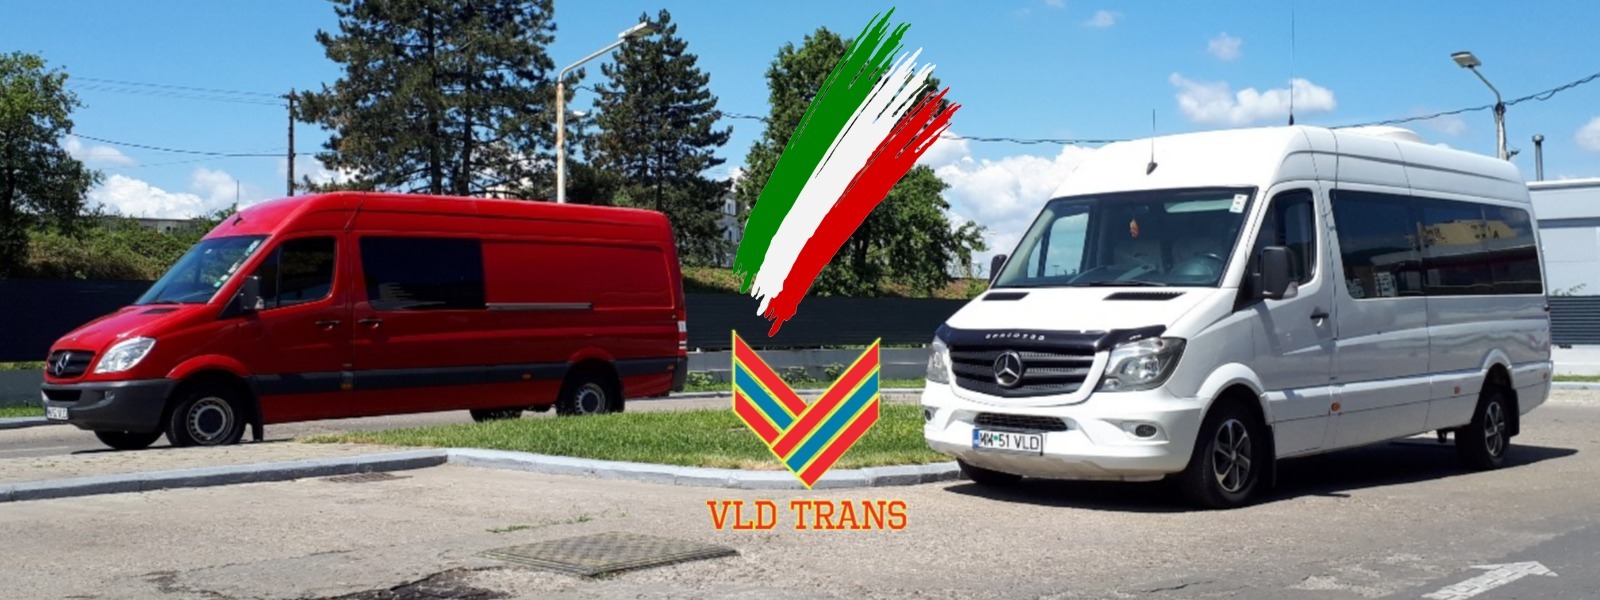 banner-4-vld-transport-italia.jpg